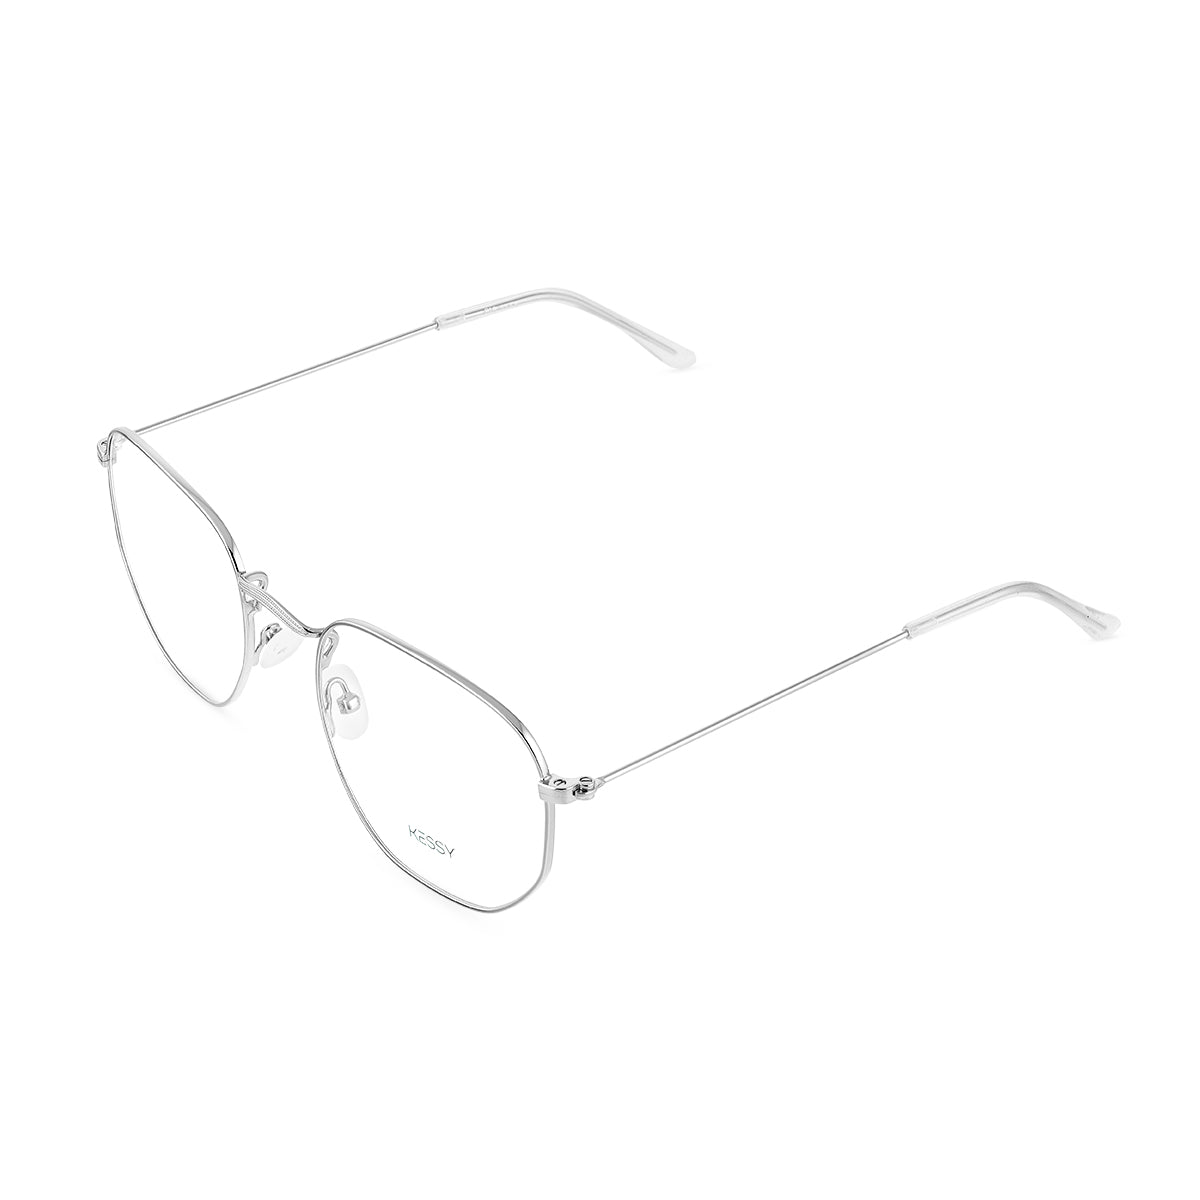 Óculos de Grau Kessy 956